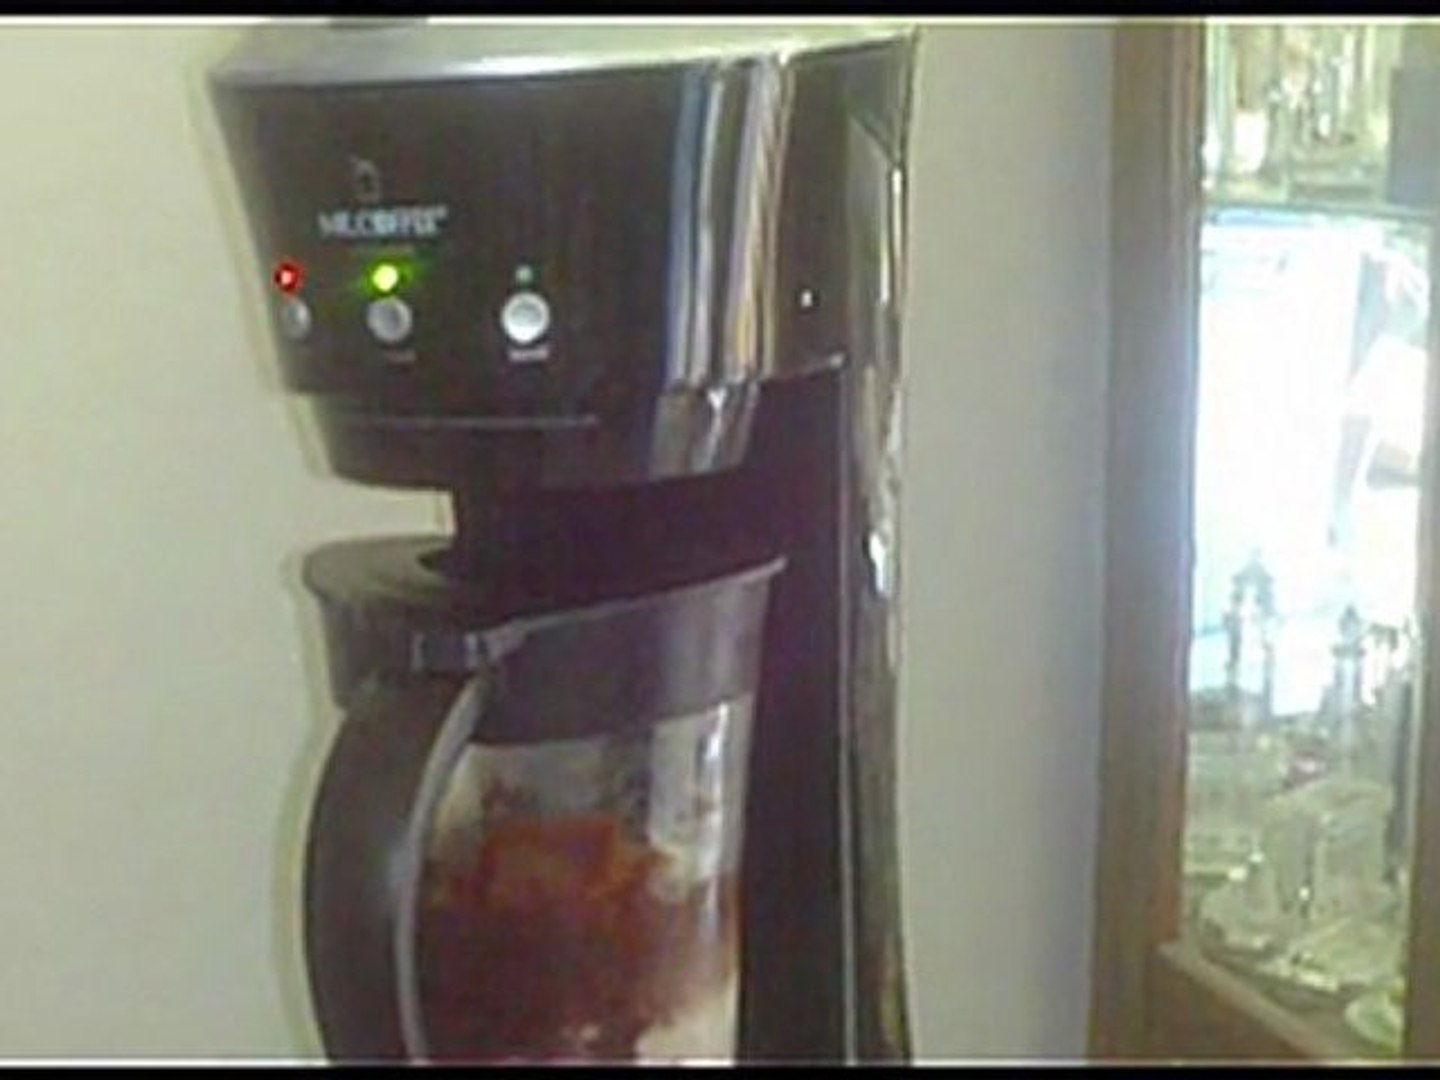 Mr. Coffee 20 Oz. Frappe Maker